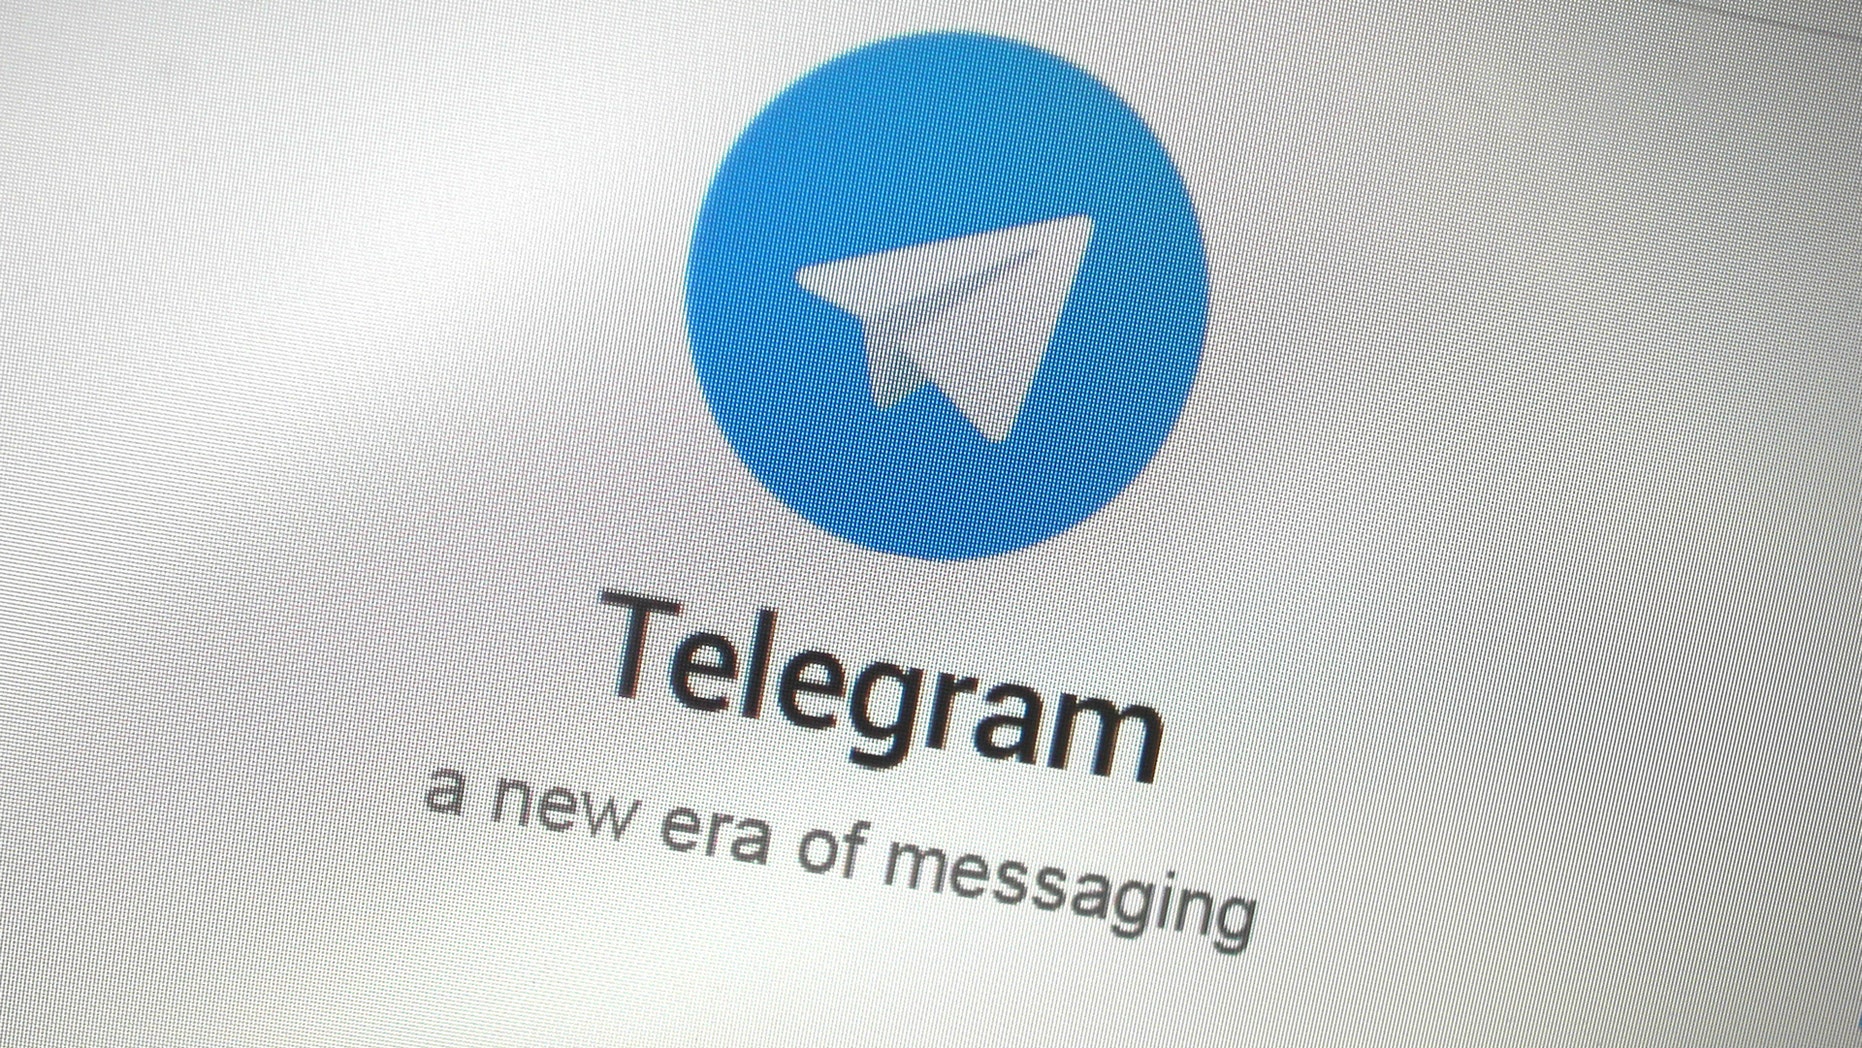 telegram org